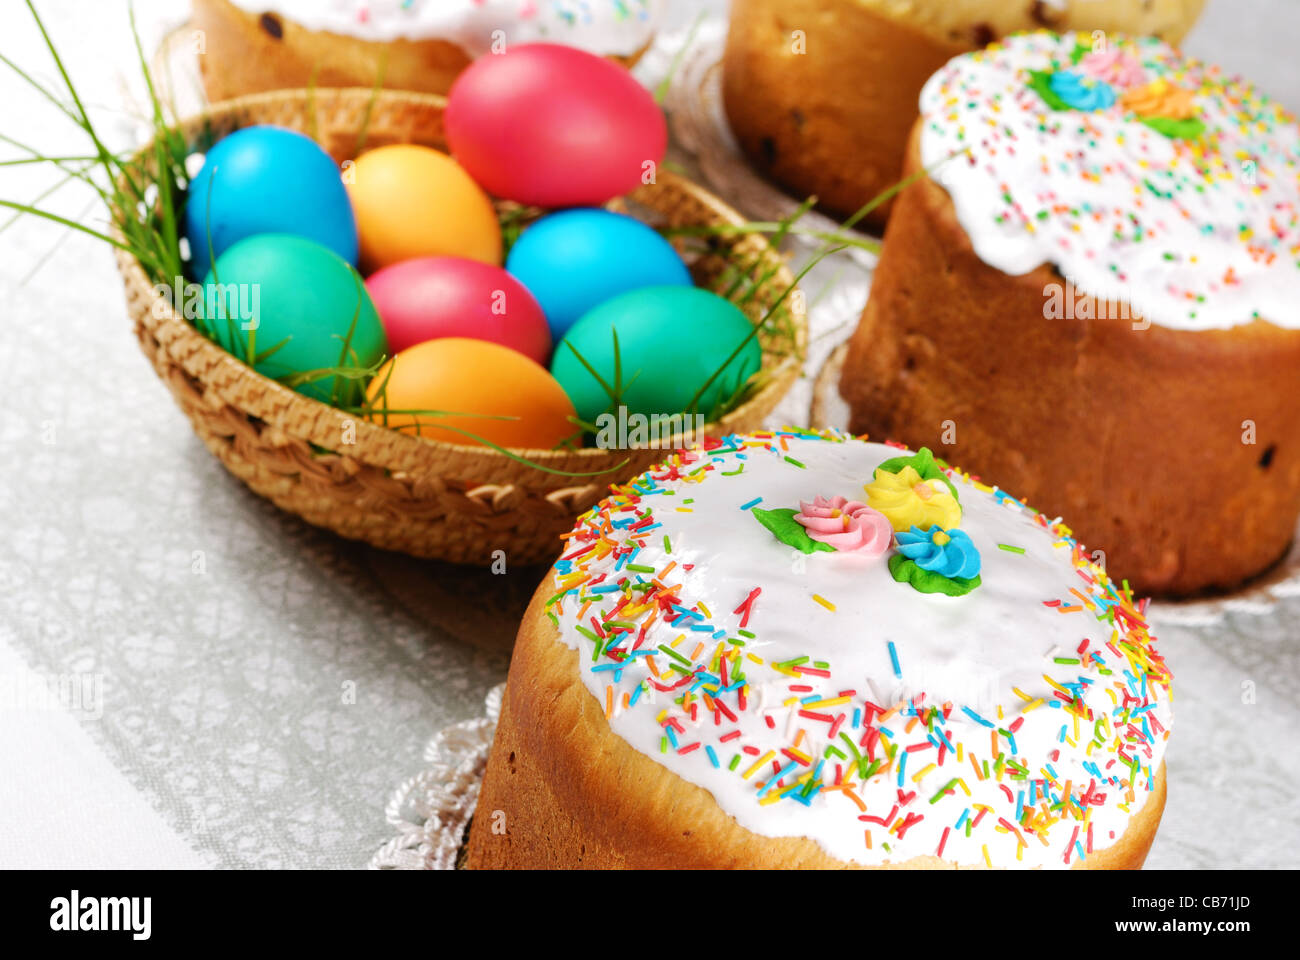 Les oeufs de Pâques et des gâteaux sur le fond lumineux Banque D'Images